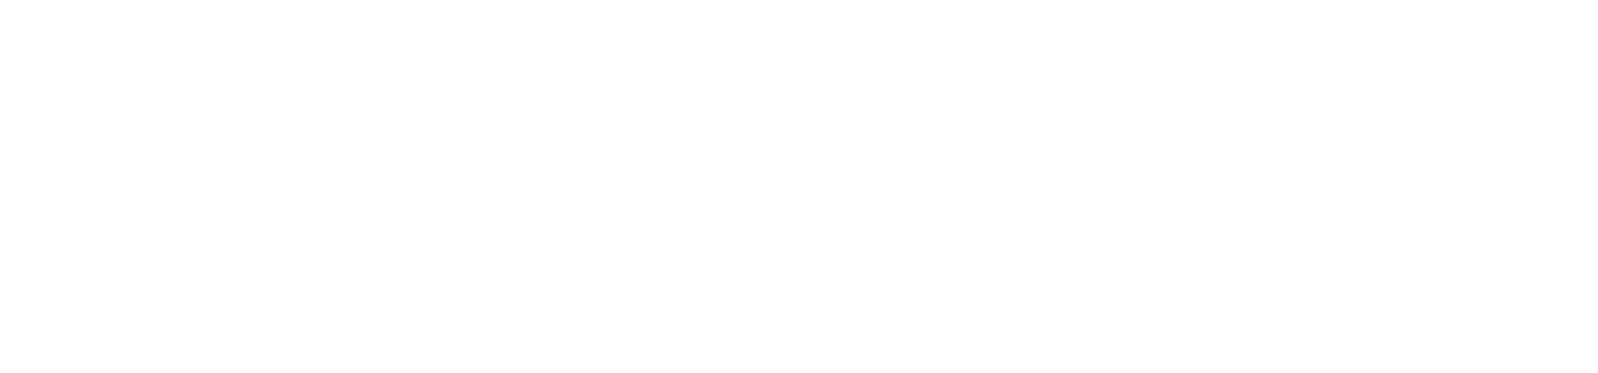 NV Bekaert logo large for dark backgrounds (transparent PNG)